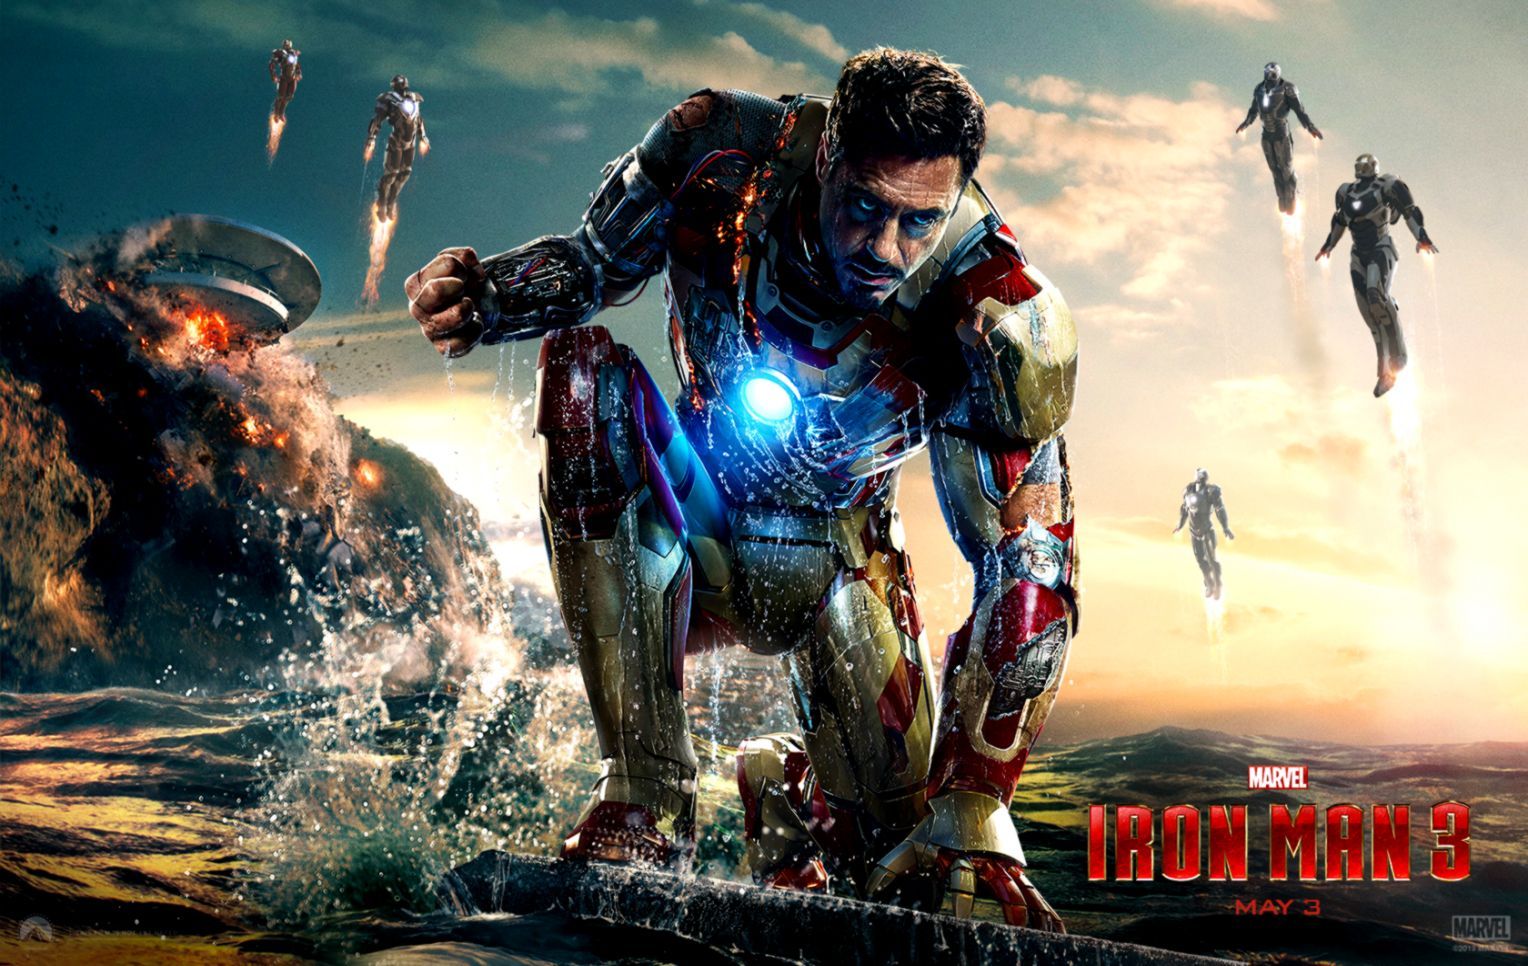 Iron Man 3 Poster Wallpaper. Best Wallpaper HD Collection